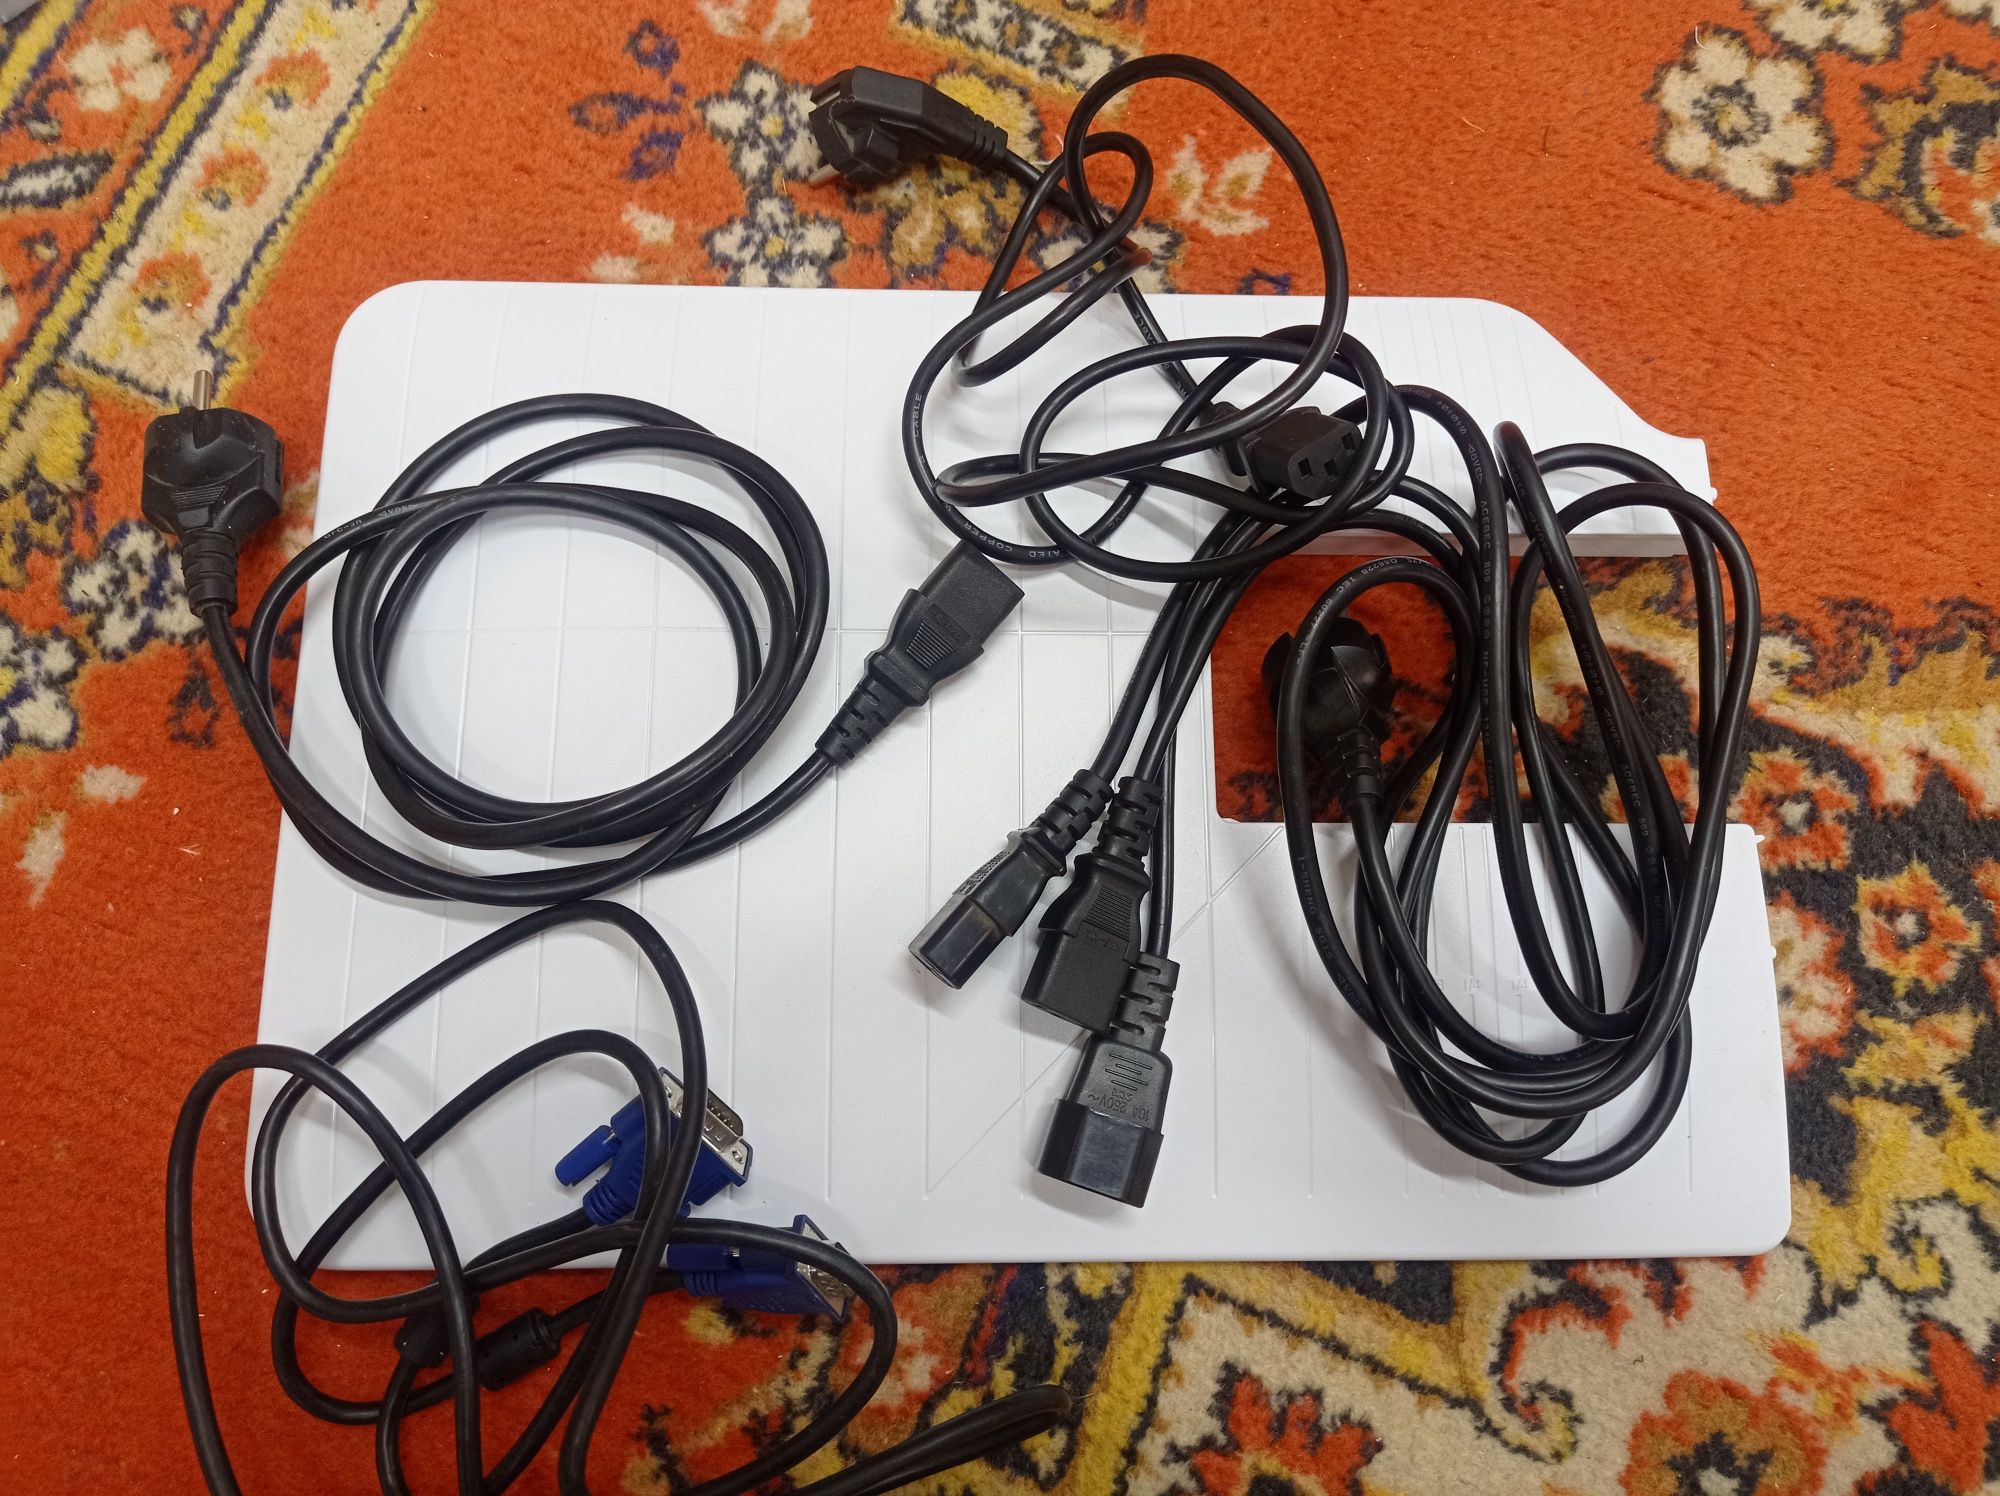 Различные шнуры, USB, HDMI, переходники, интернет кабель